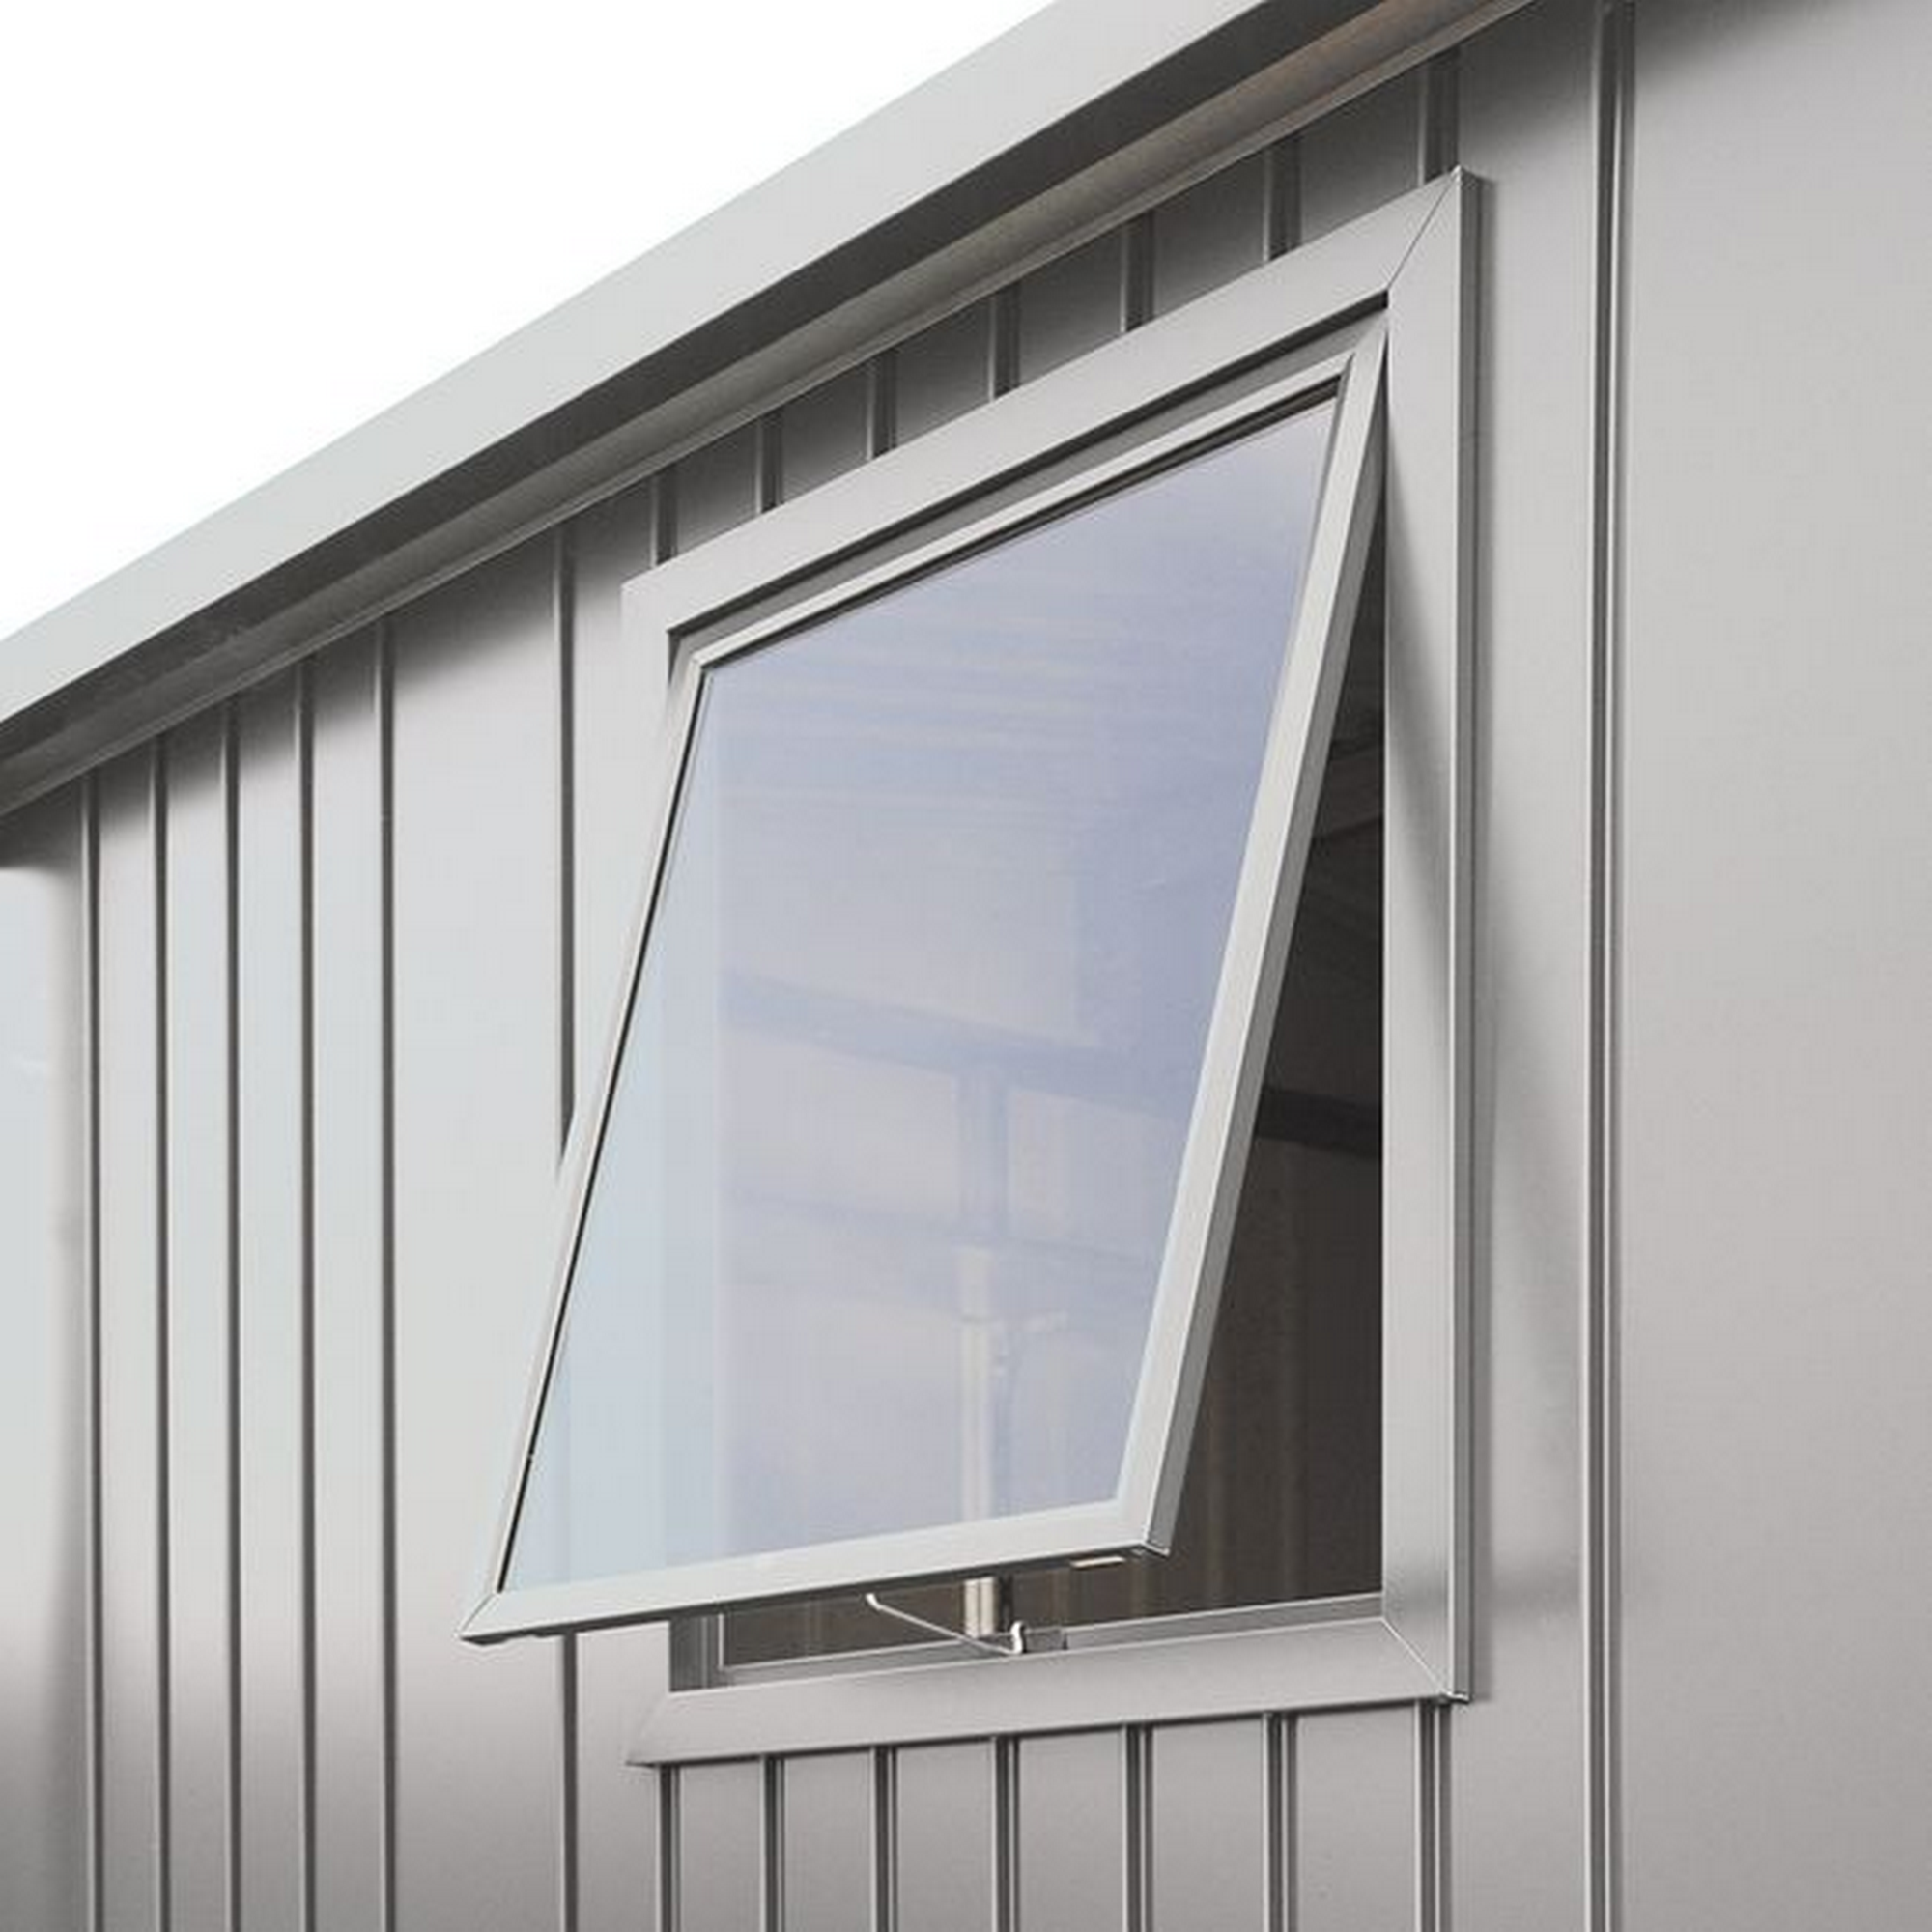 Fenster silber-metallic 50 x 60 cm für Gerätehaus 'Europa' + product picture